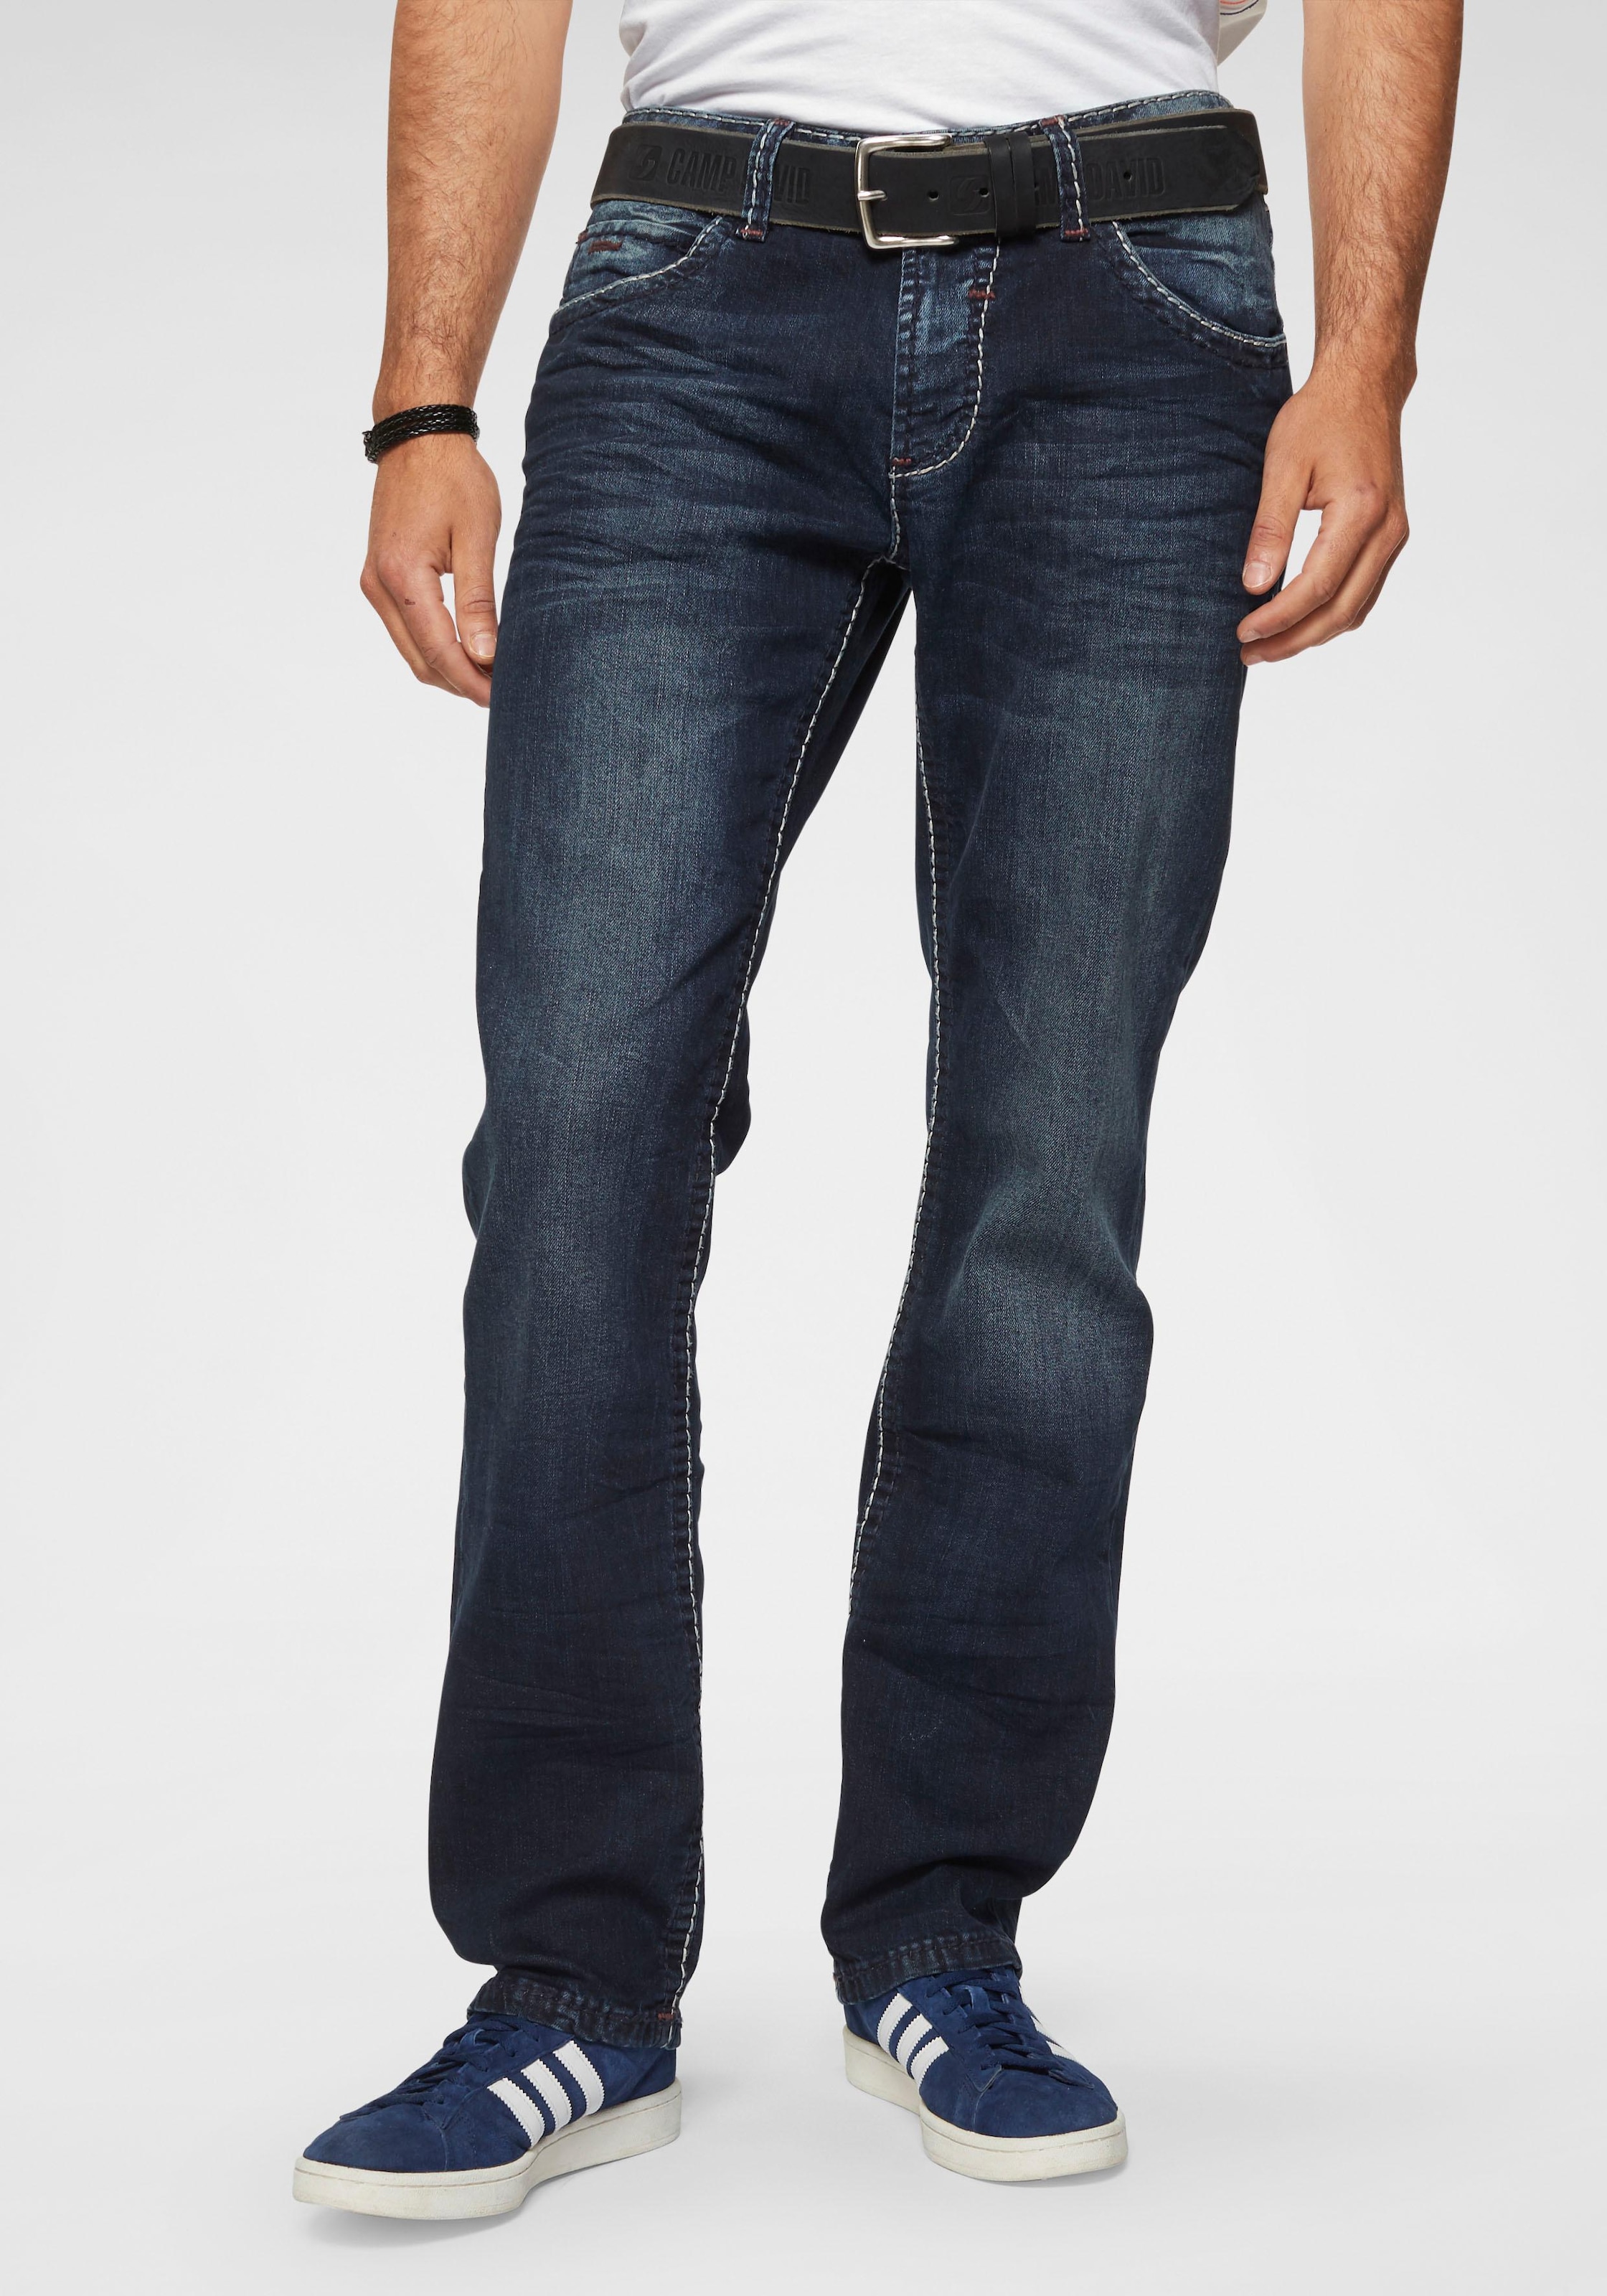 CAMP DAVID Straight-Jeans »NI:CO:R611«, mit Steppnähten markanten bequem kaufen